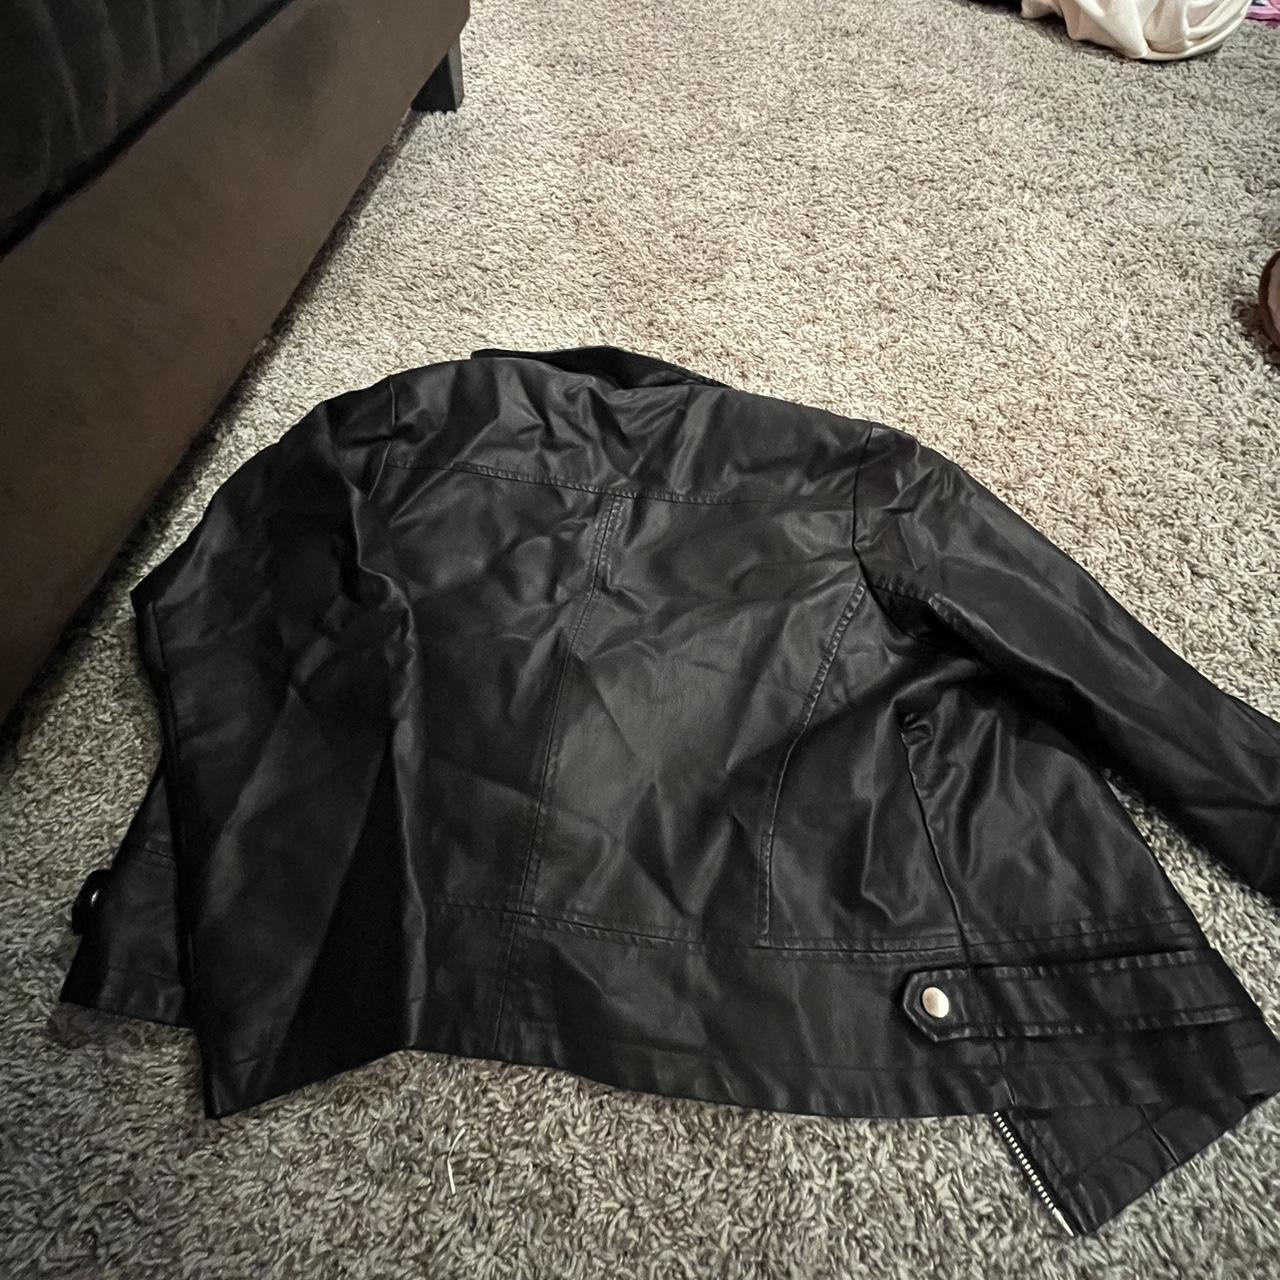 Black, Cropped leather jacket. Pockets. Zip up.... - Depop